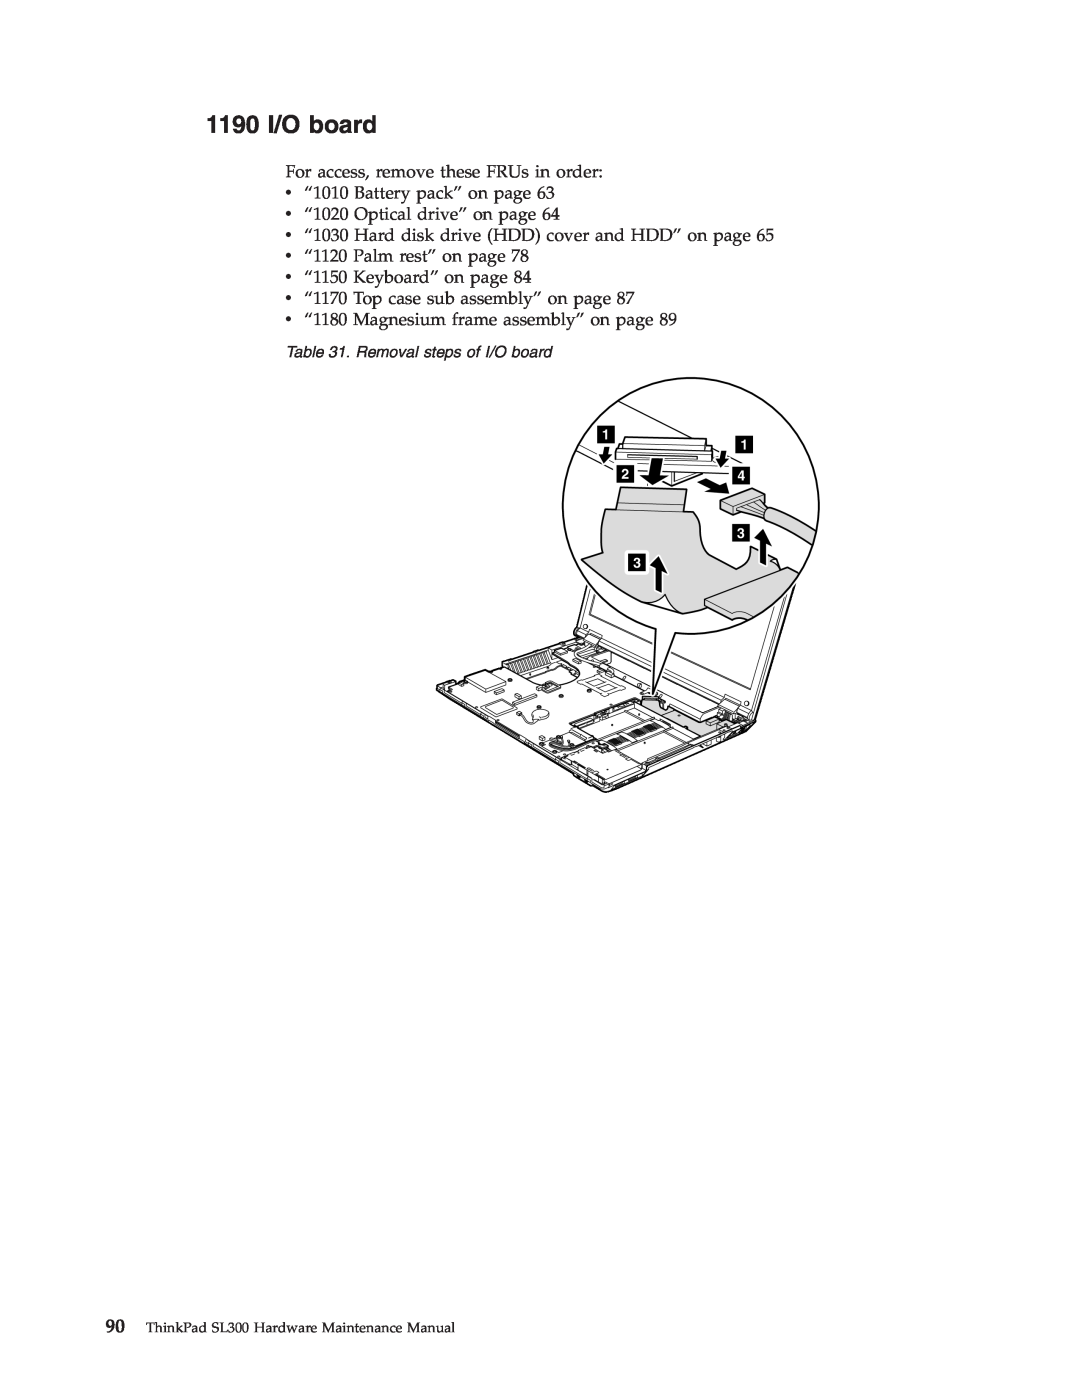 Lenovo manual 1190 I/O board, Removal steps of I/O board, ThinkPad SL300 Hardware Maintenance Manual 